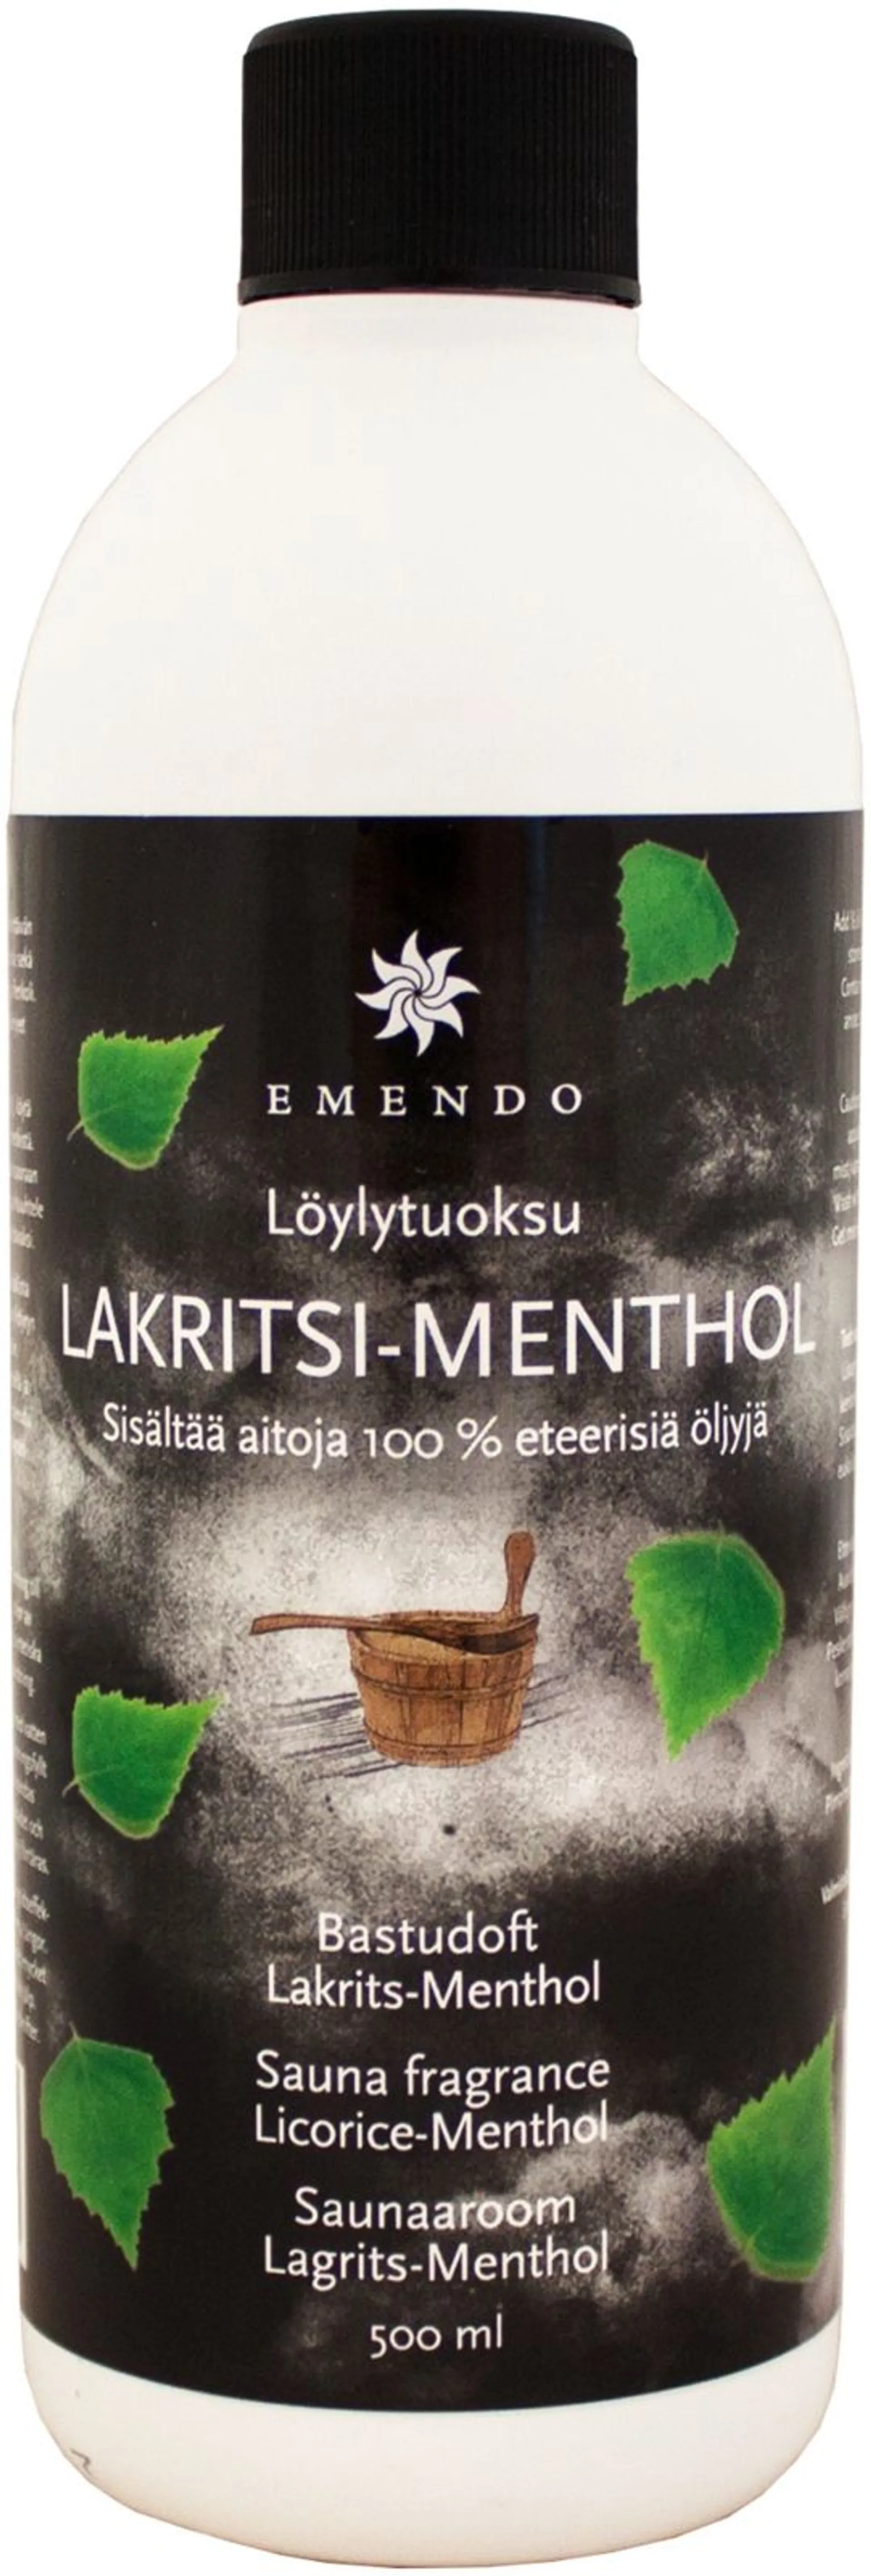 Emendo Löylytuoksu Lakritsi-Menthol 500 ml